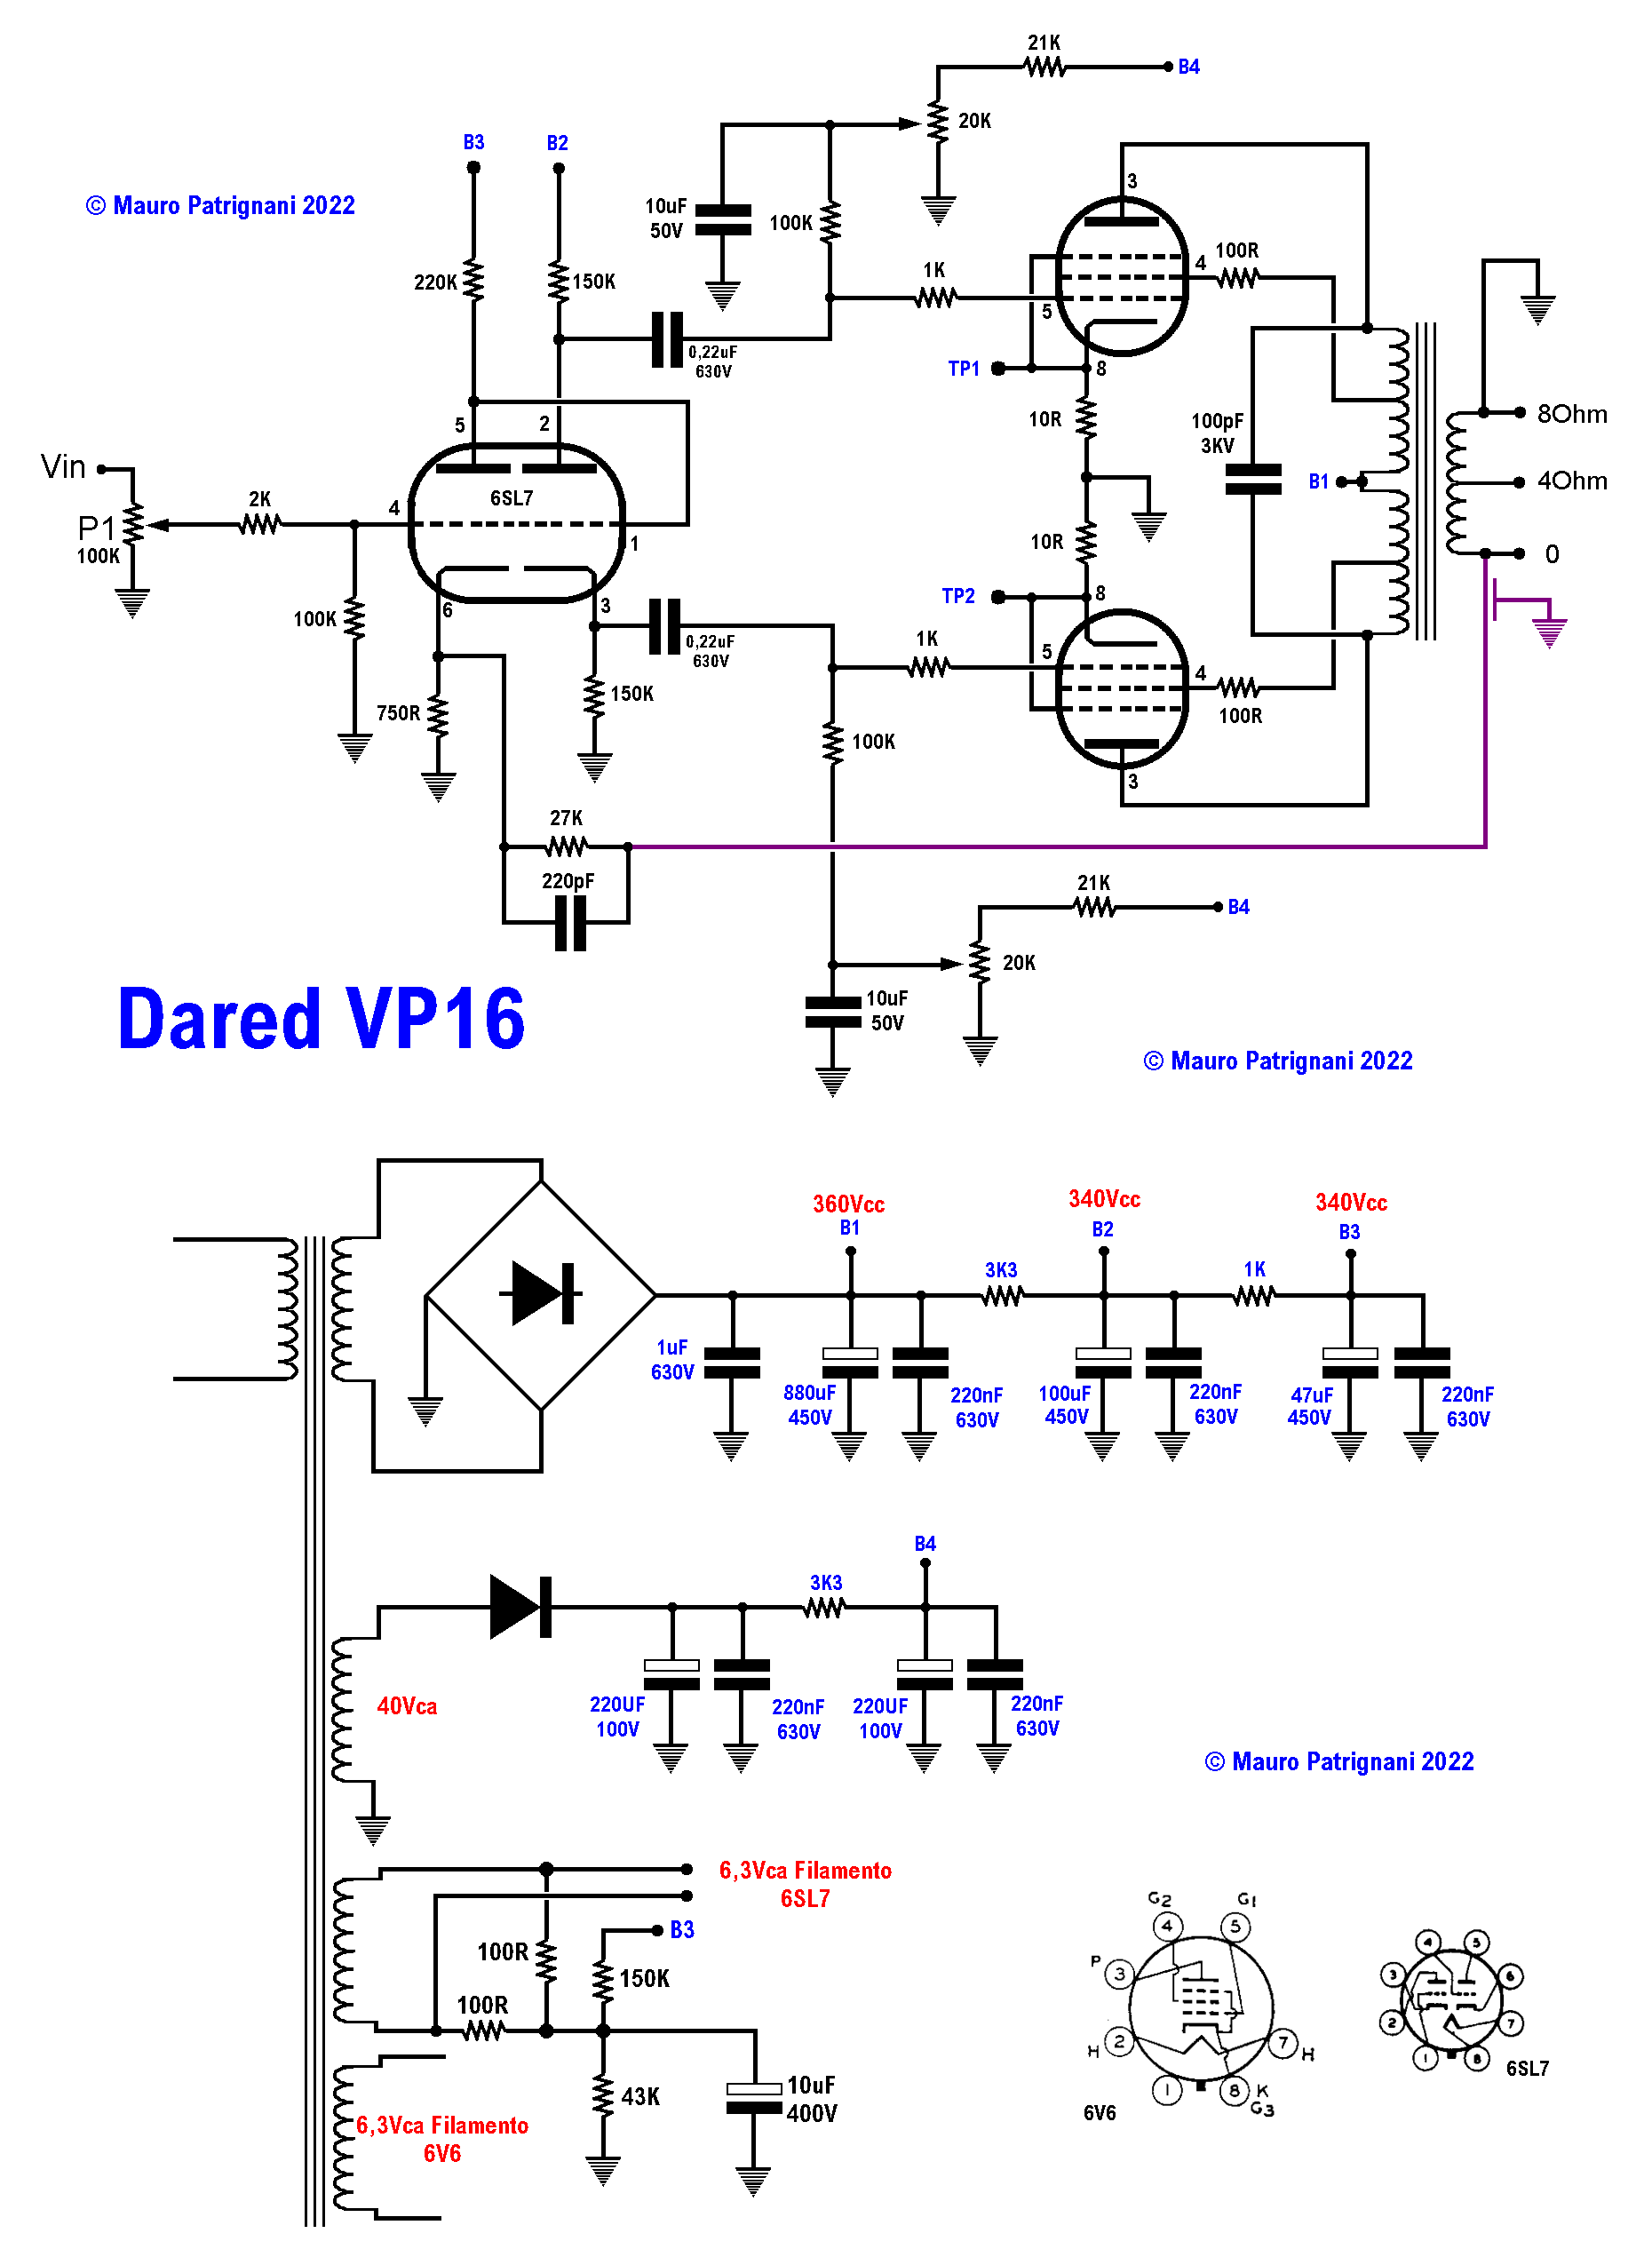 Amplificatore valvolare Dared vp16 - Ripple sui condensatori di livellamento per l'alimentazione anodica delle valvole finali